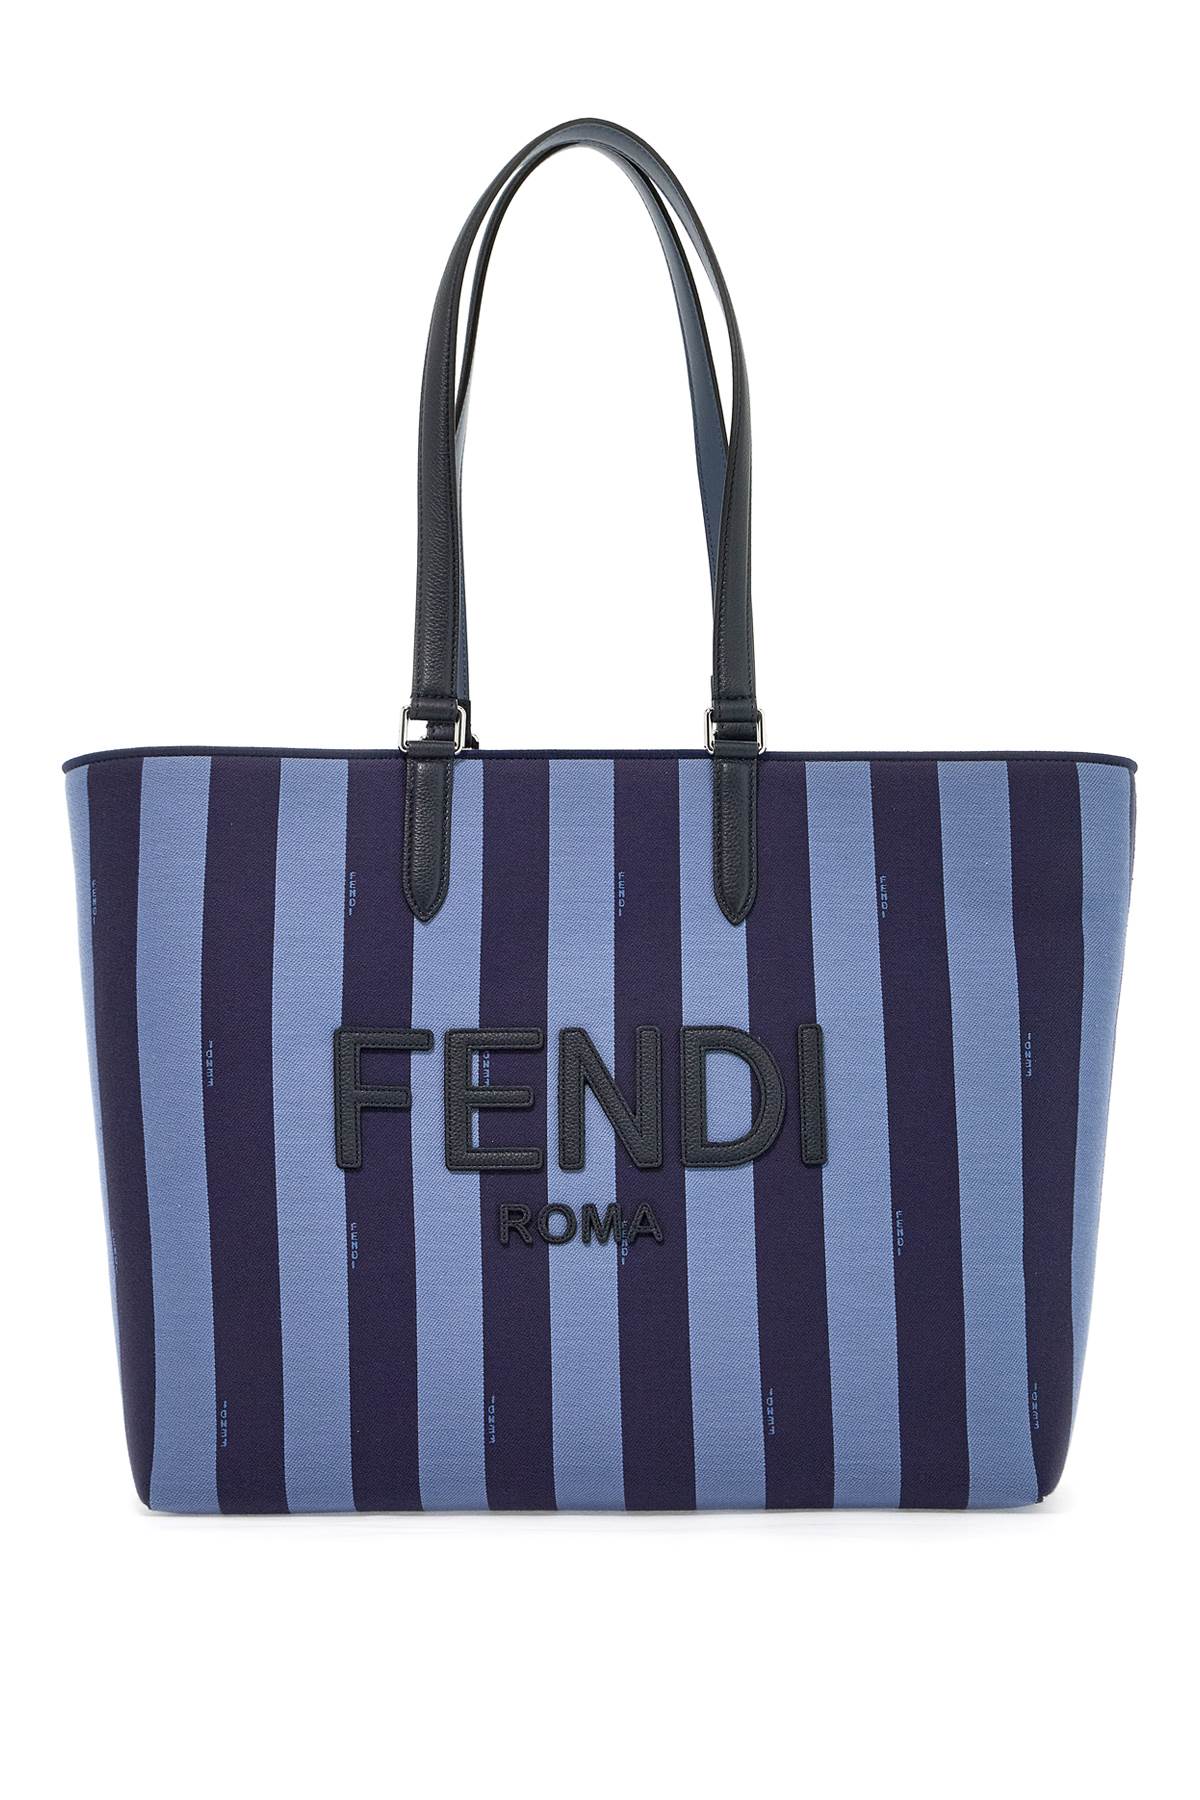 FENDI FENDI signature tote bag